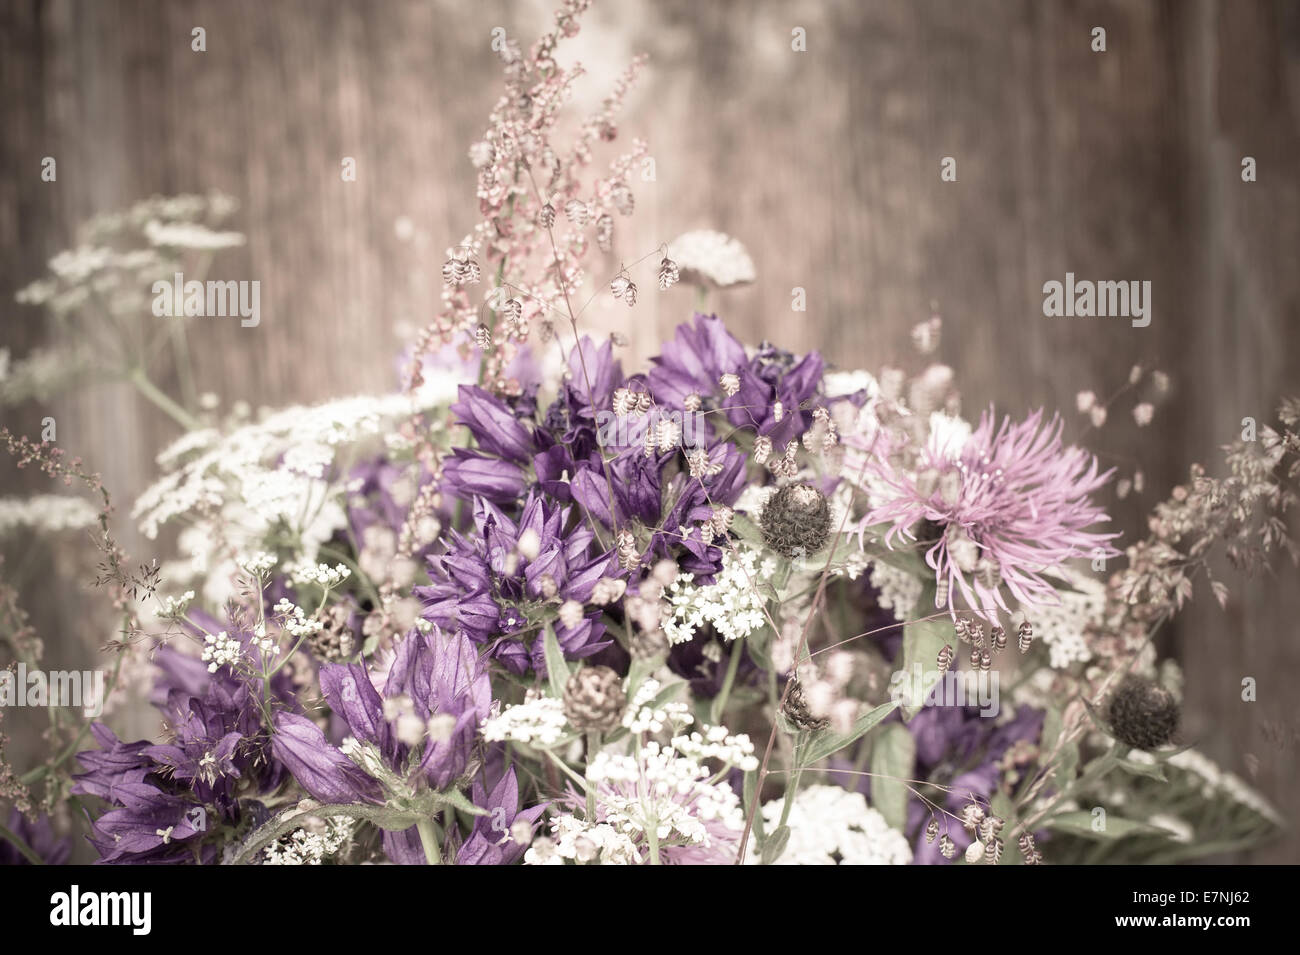 Schöne zarte Blumenstrauß Sommer Wiese auf hölzernen Hintergrund. Florale Komposition im ländlichen Vintage-Stil Stockfoto